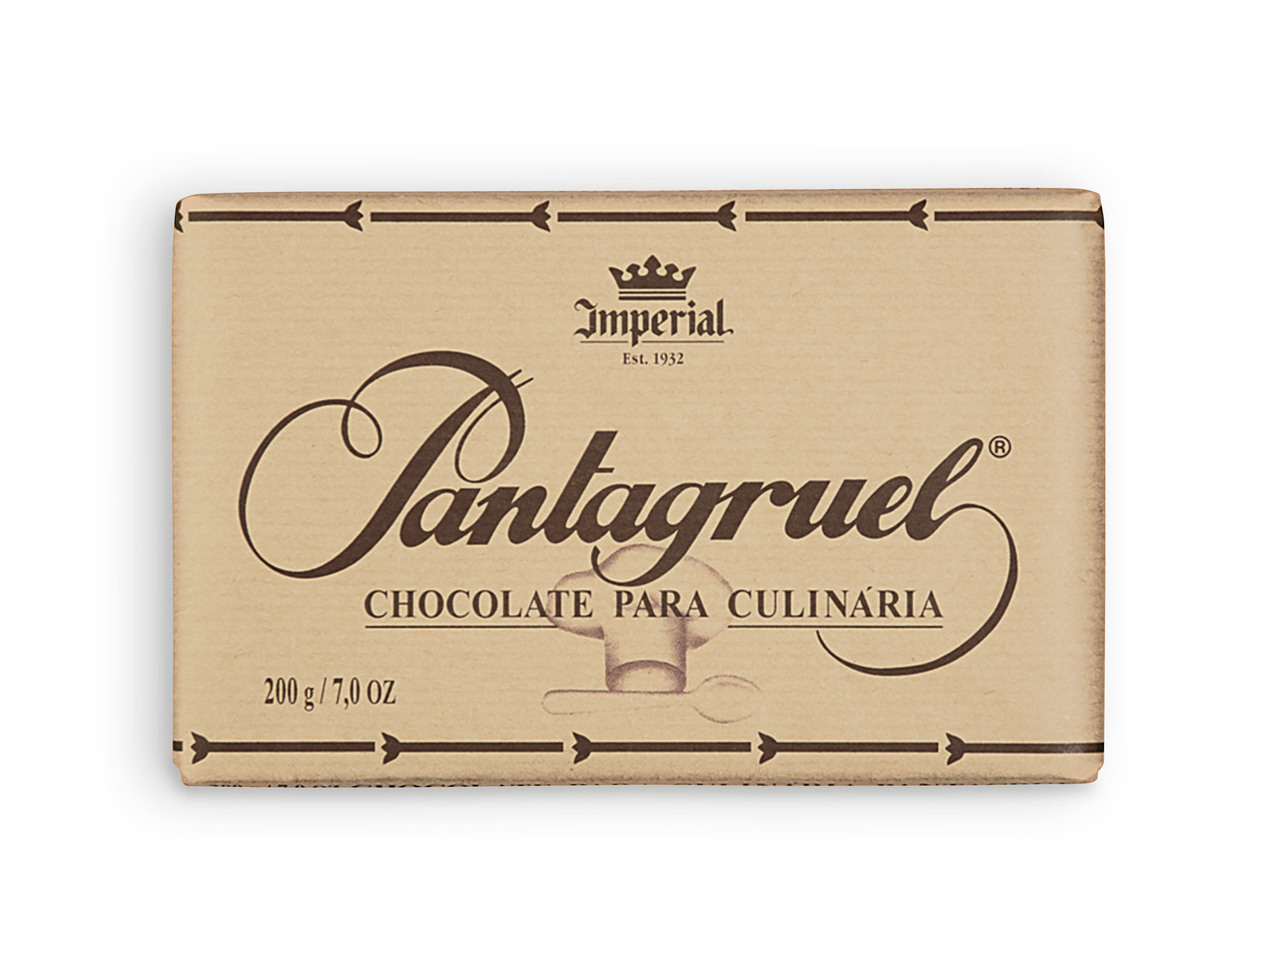 PANTAGRUEL(R) Chocolate para Culinária